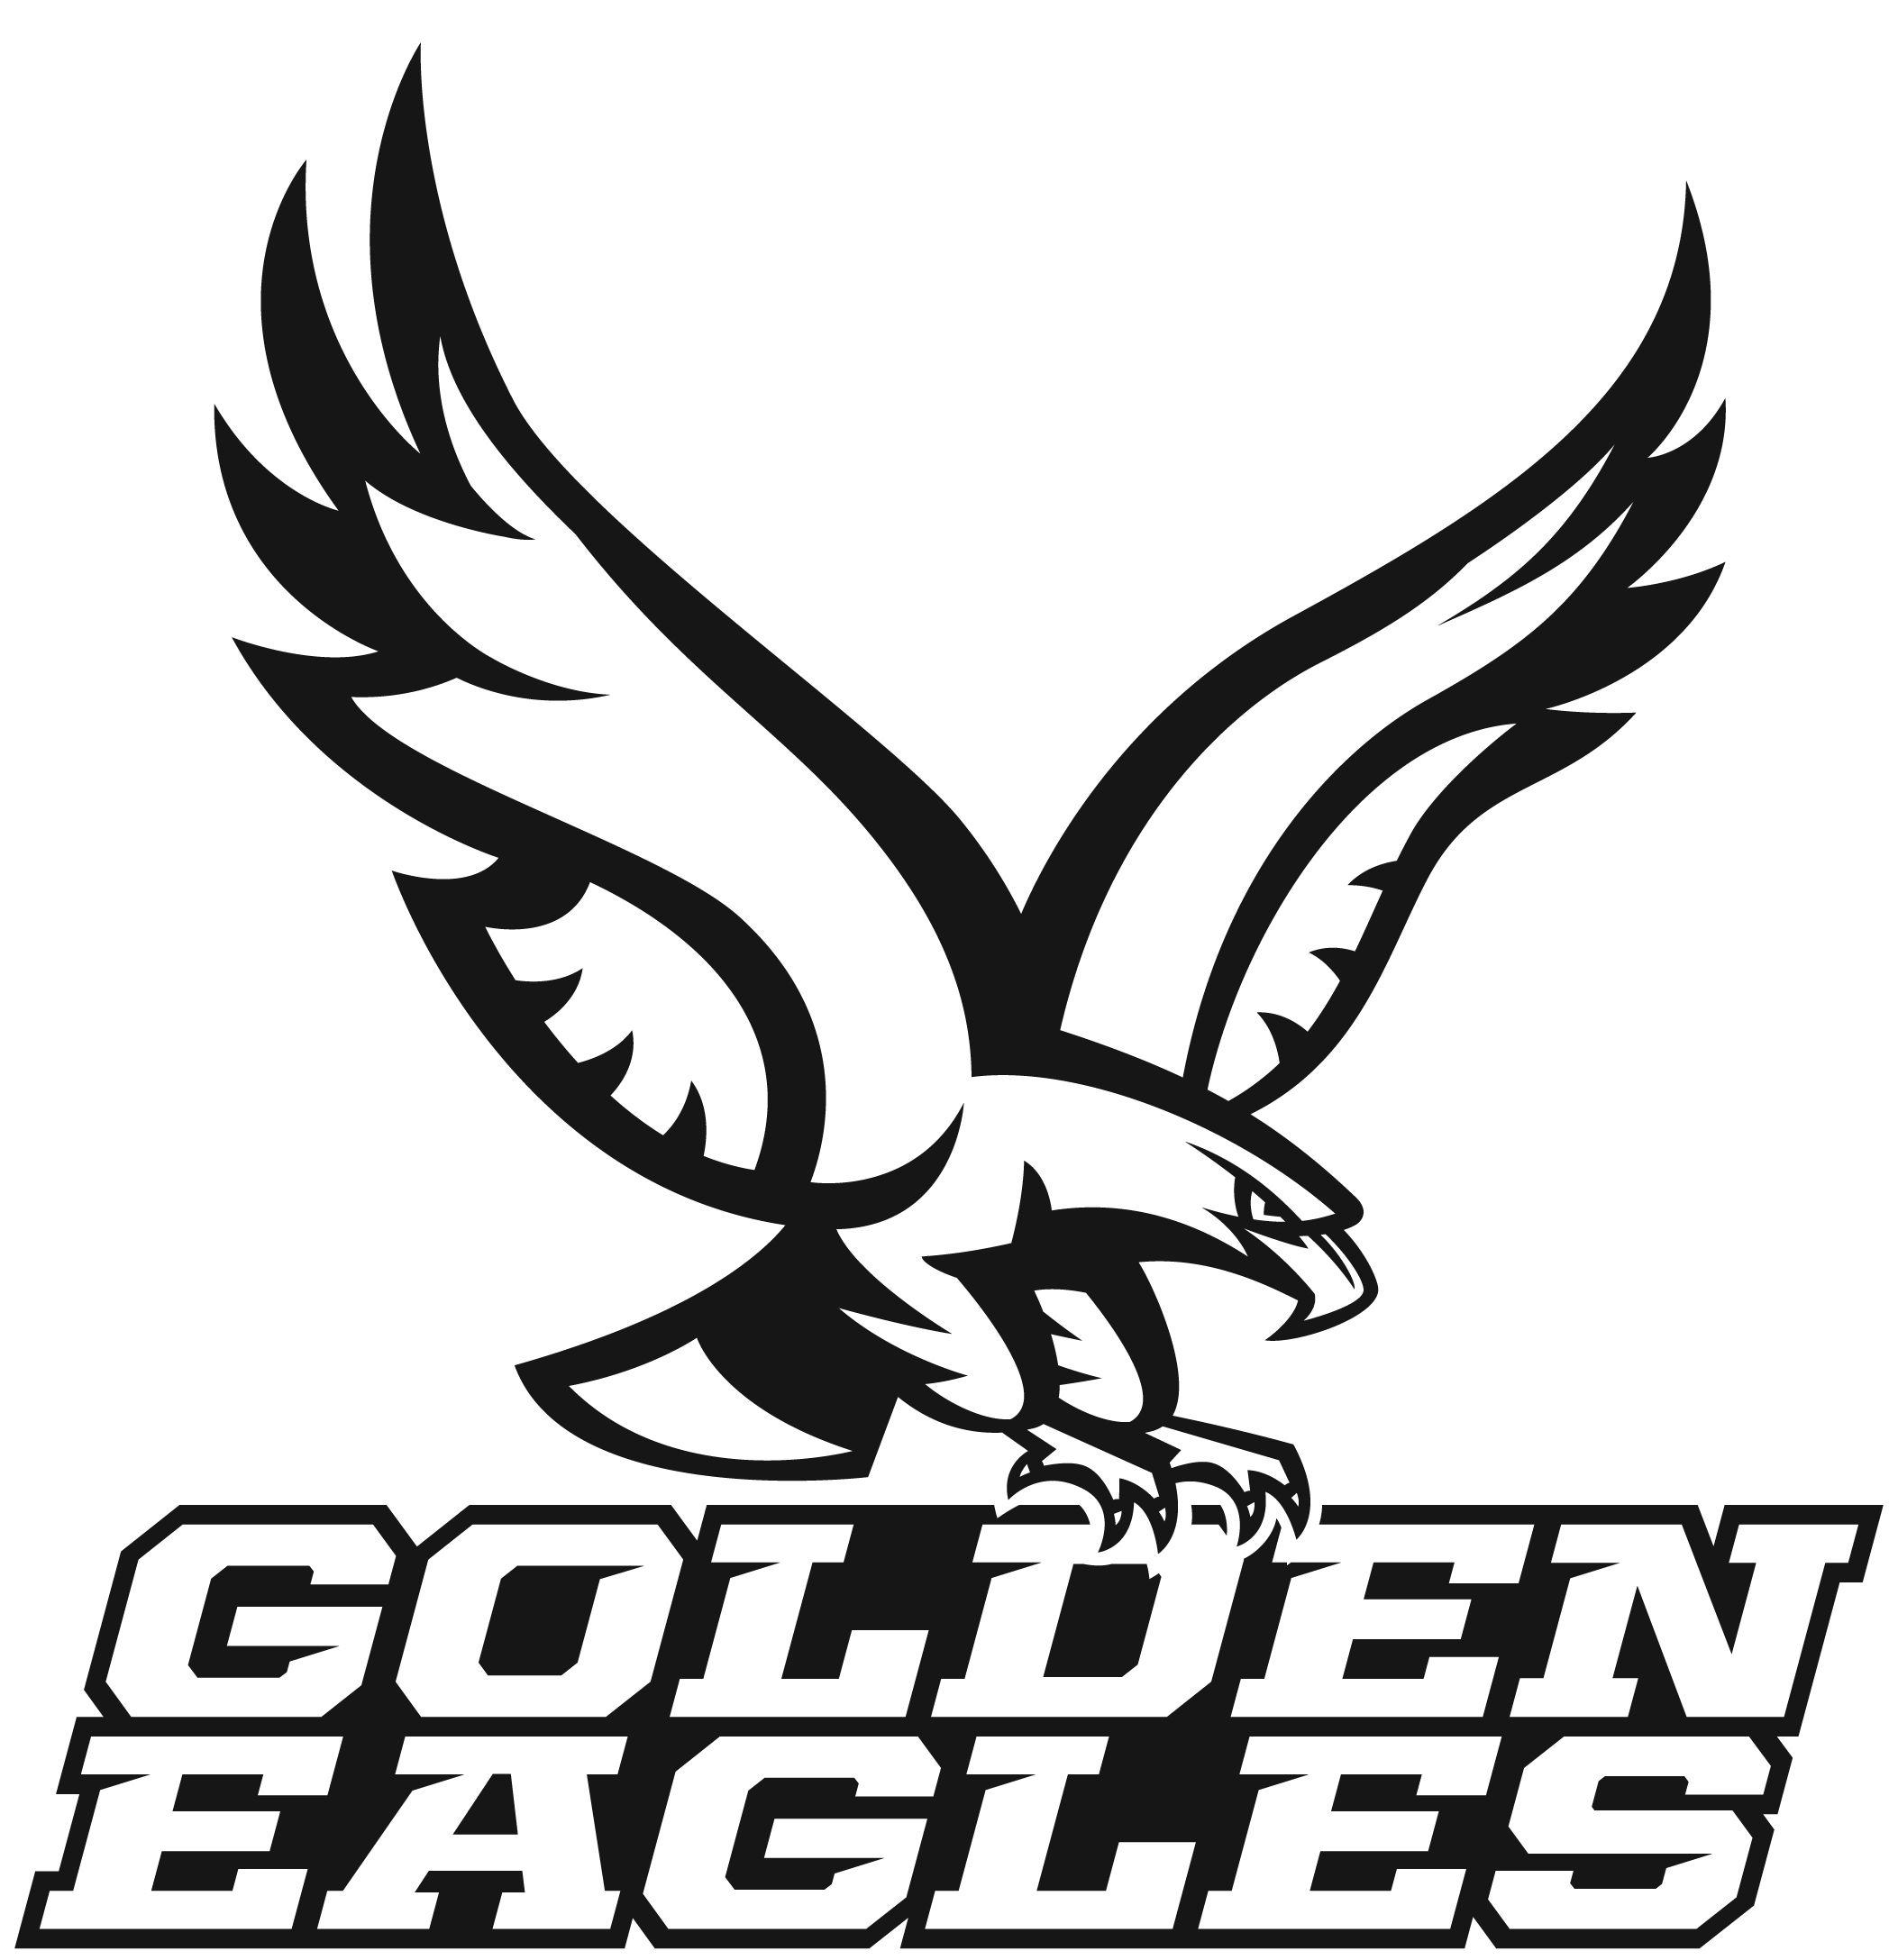 Black and White Eagle Football Logo - Athletic Logos - About Us - Holy Family Catholic Schools